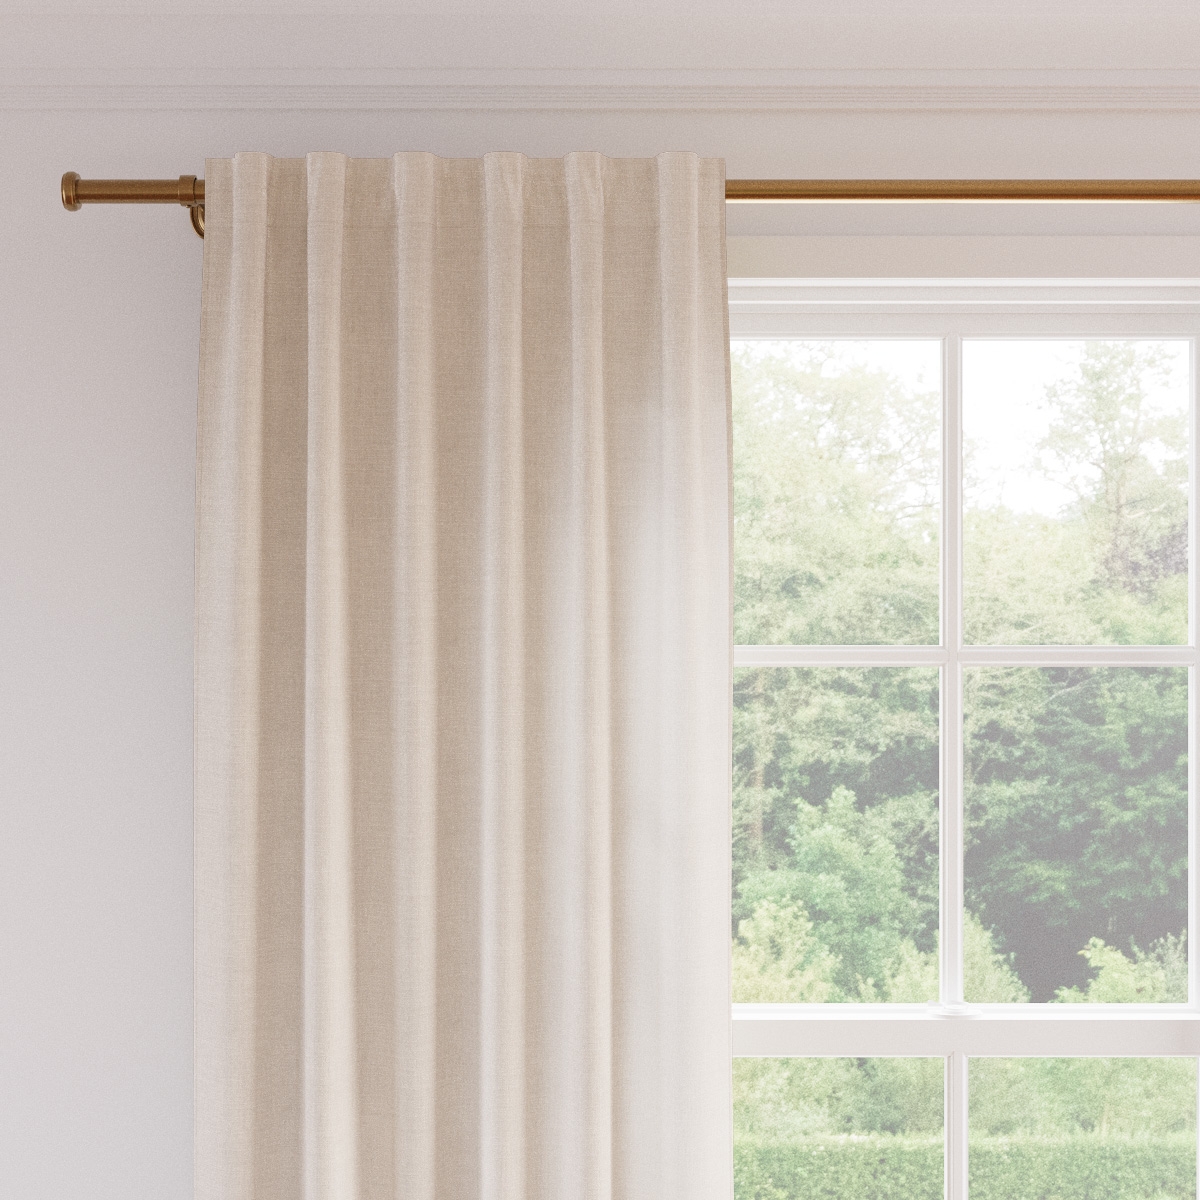 Linen Curtain, Antique White Linen, 50" x 96", Privacy - Image 1